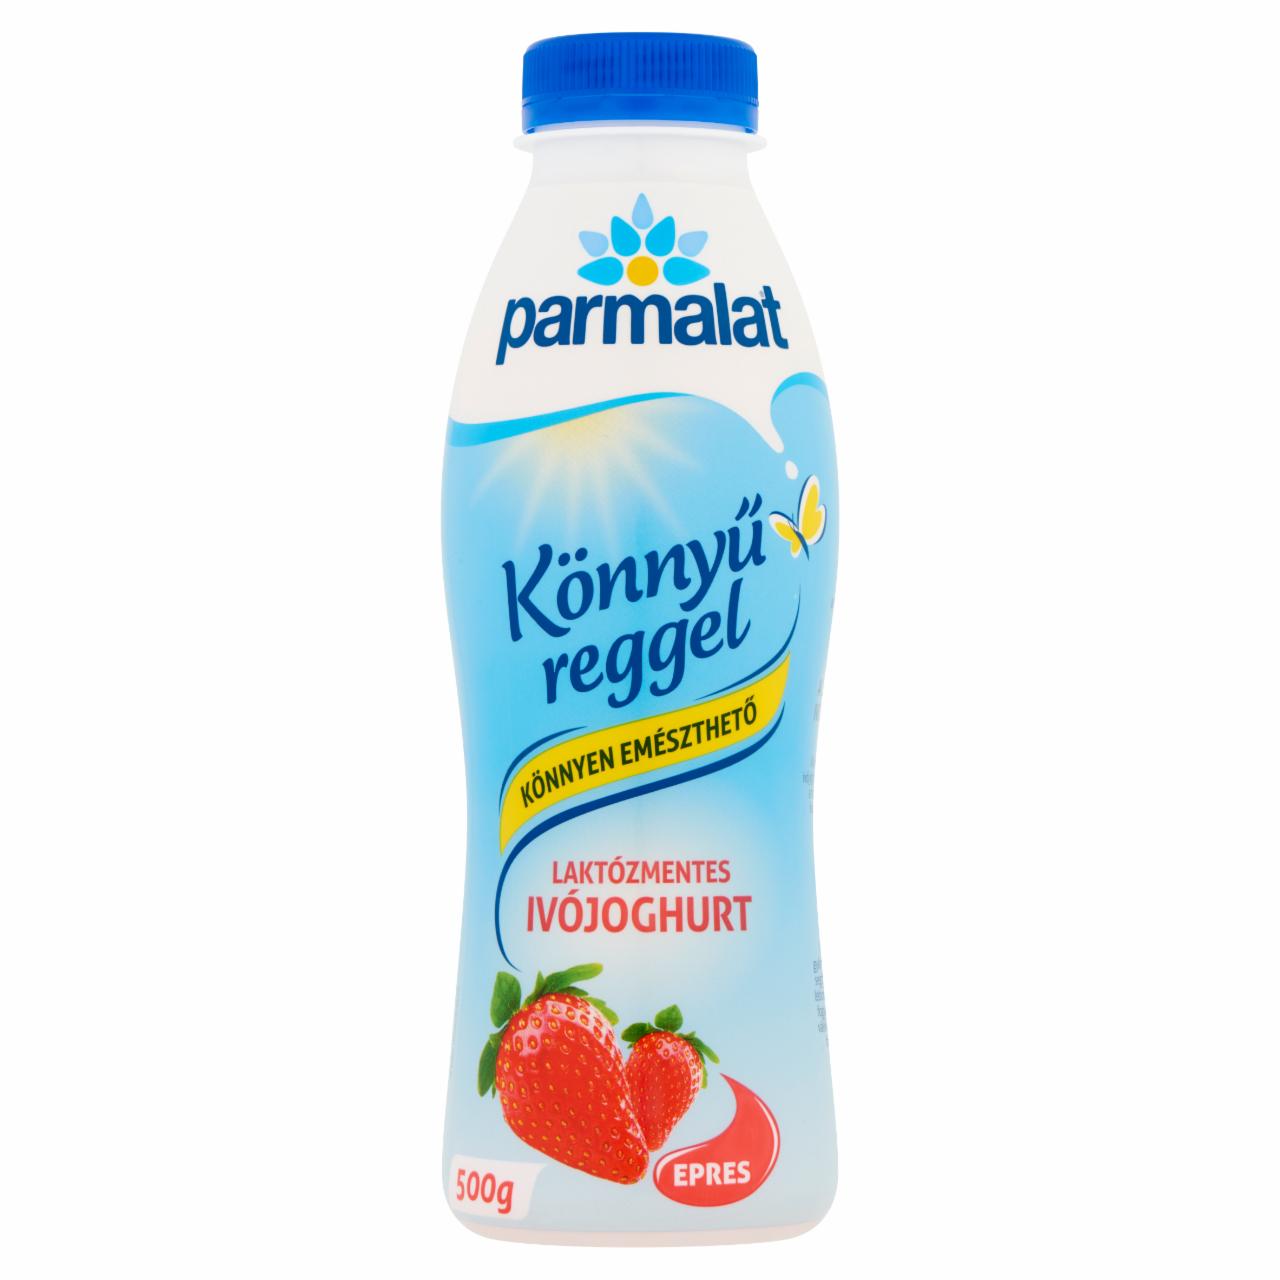 Képek - Parmalat laktózmentes, zsírszegény, epres ivójoghurt 500 g